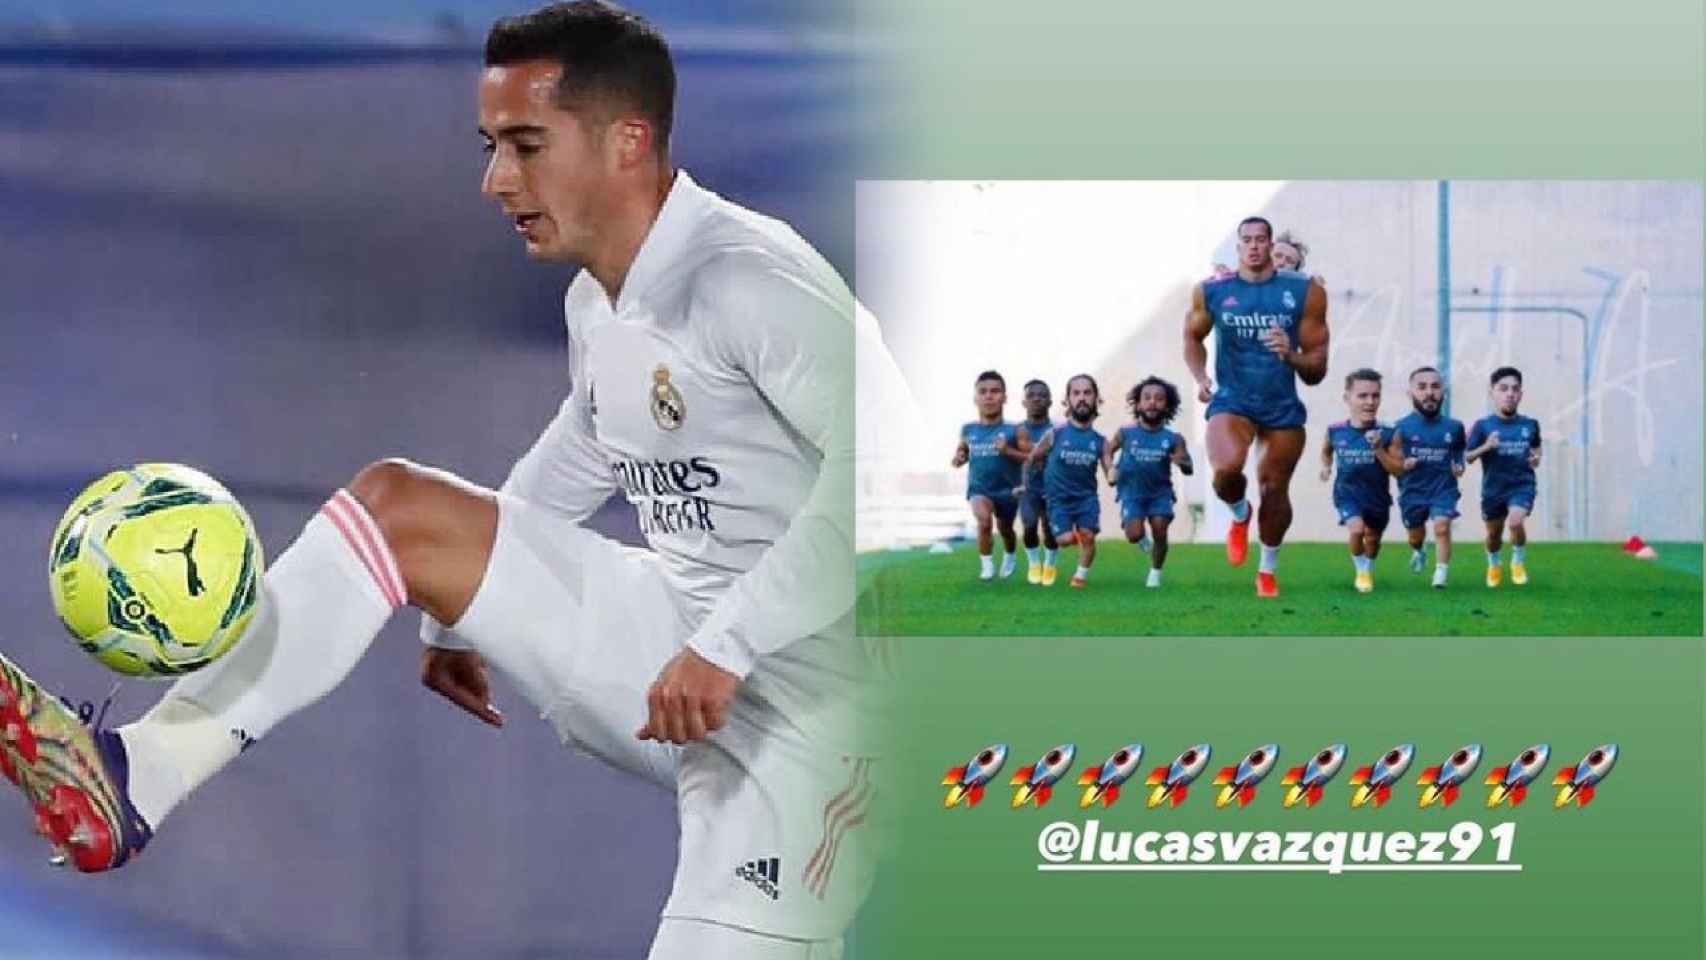 Lucas Vázquez y su mofa en Instagram